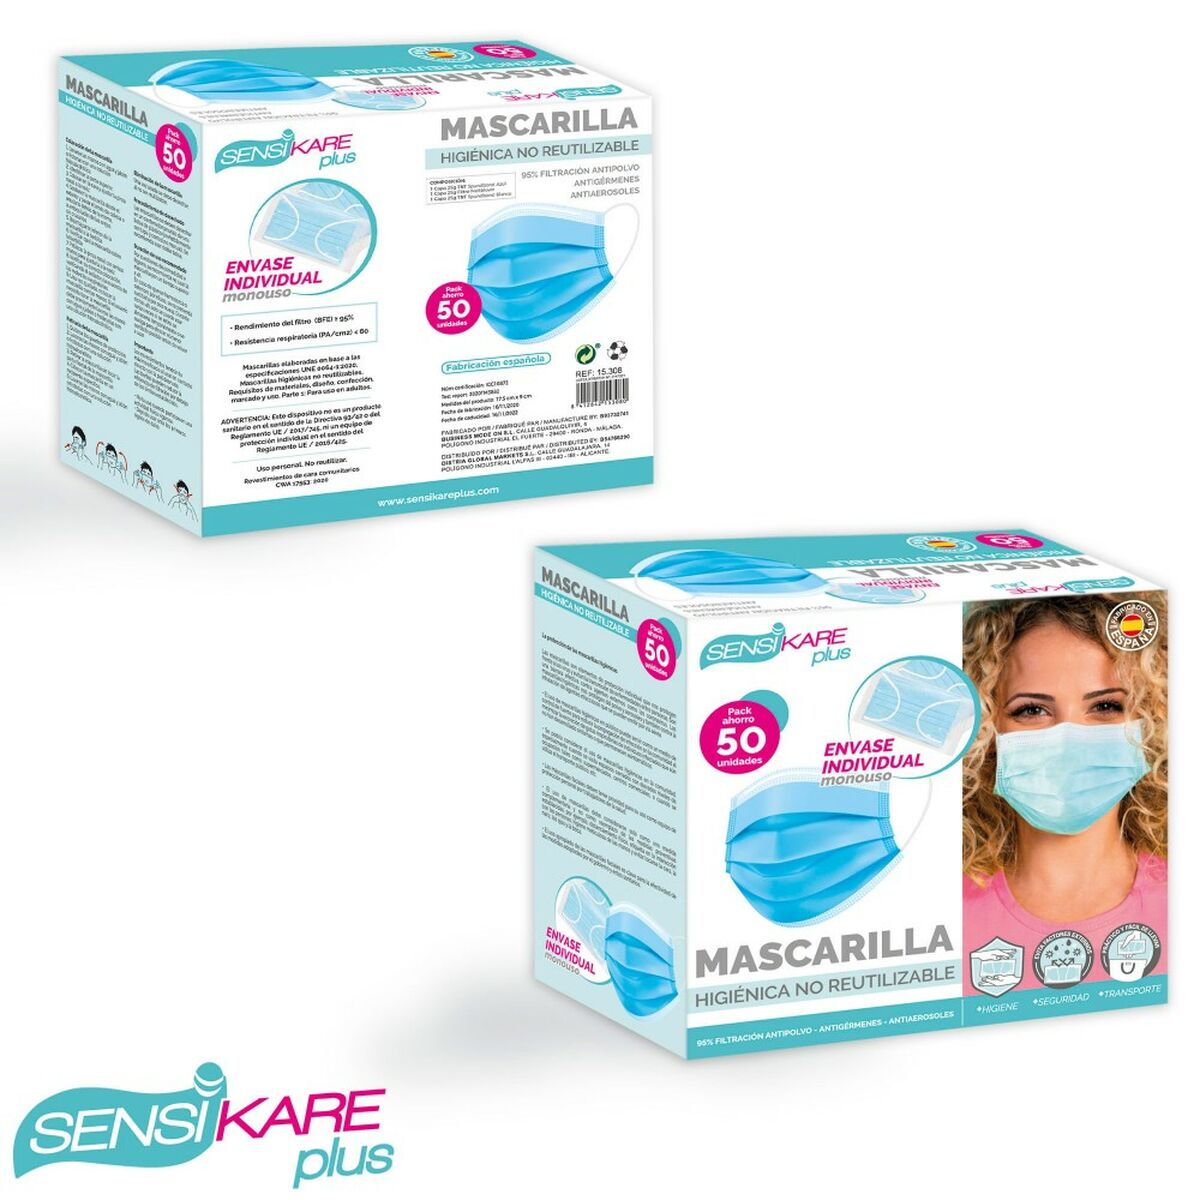 Kaufe Schachtel mit Hygienemasken SensiKare 50 Stücke (12 Stück) bei AWK Flagship um € 130.00